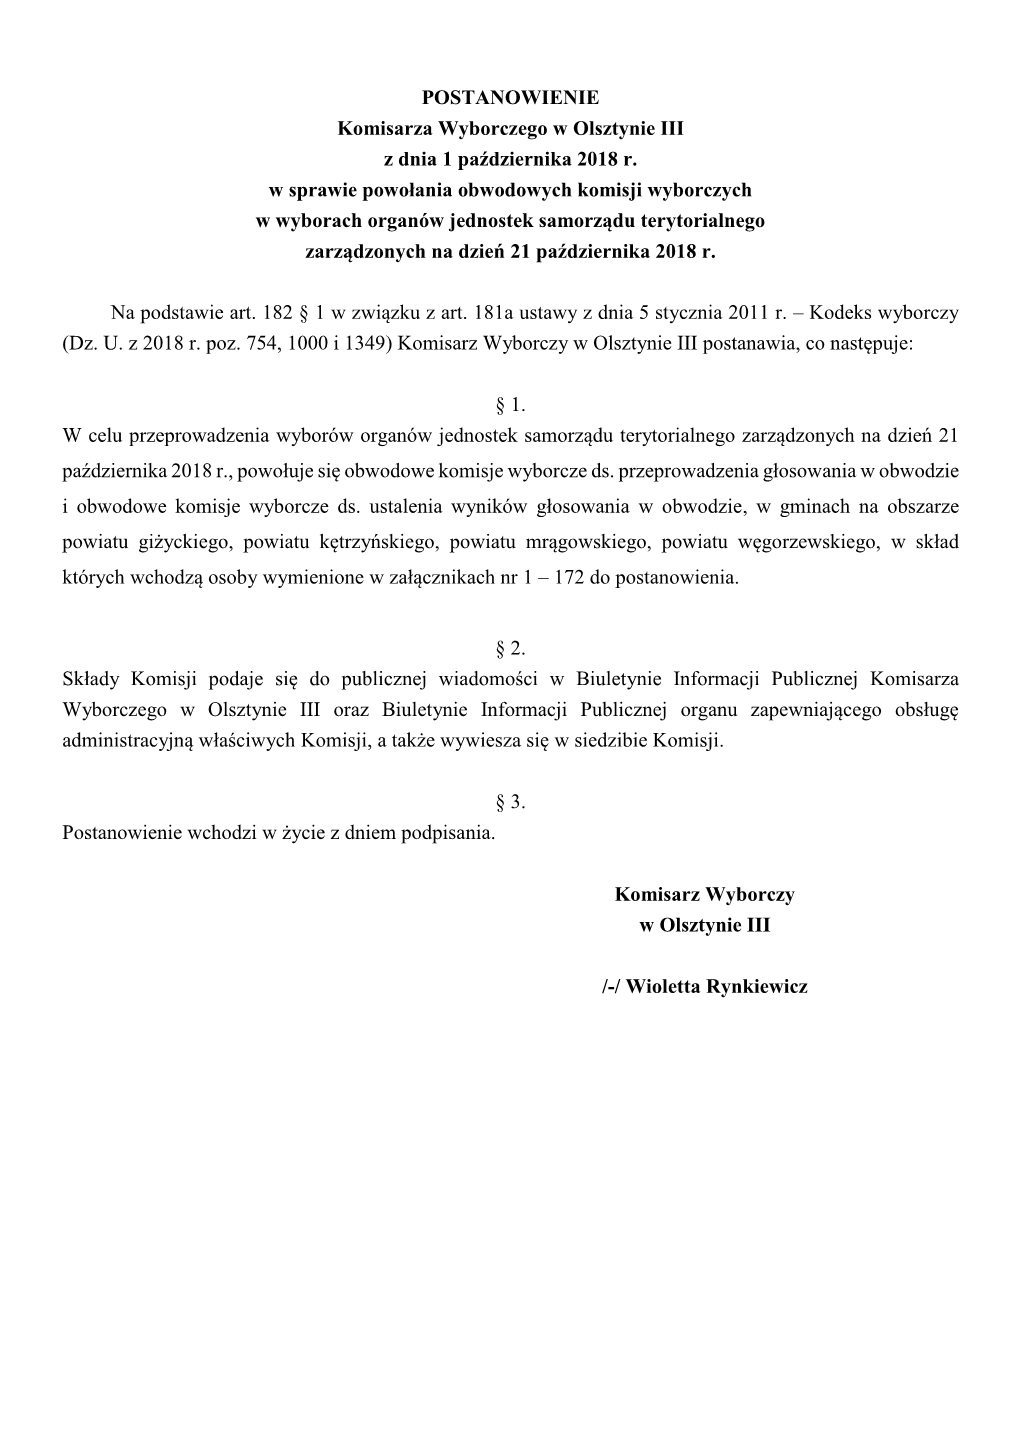 POSTANOWIENIE Komisarza Wyborczego W Olsztynie III Z Dnia 1 Października 2018 R